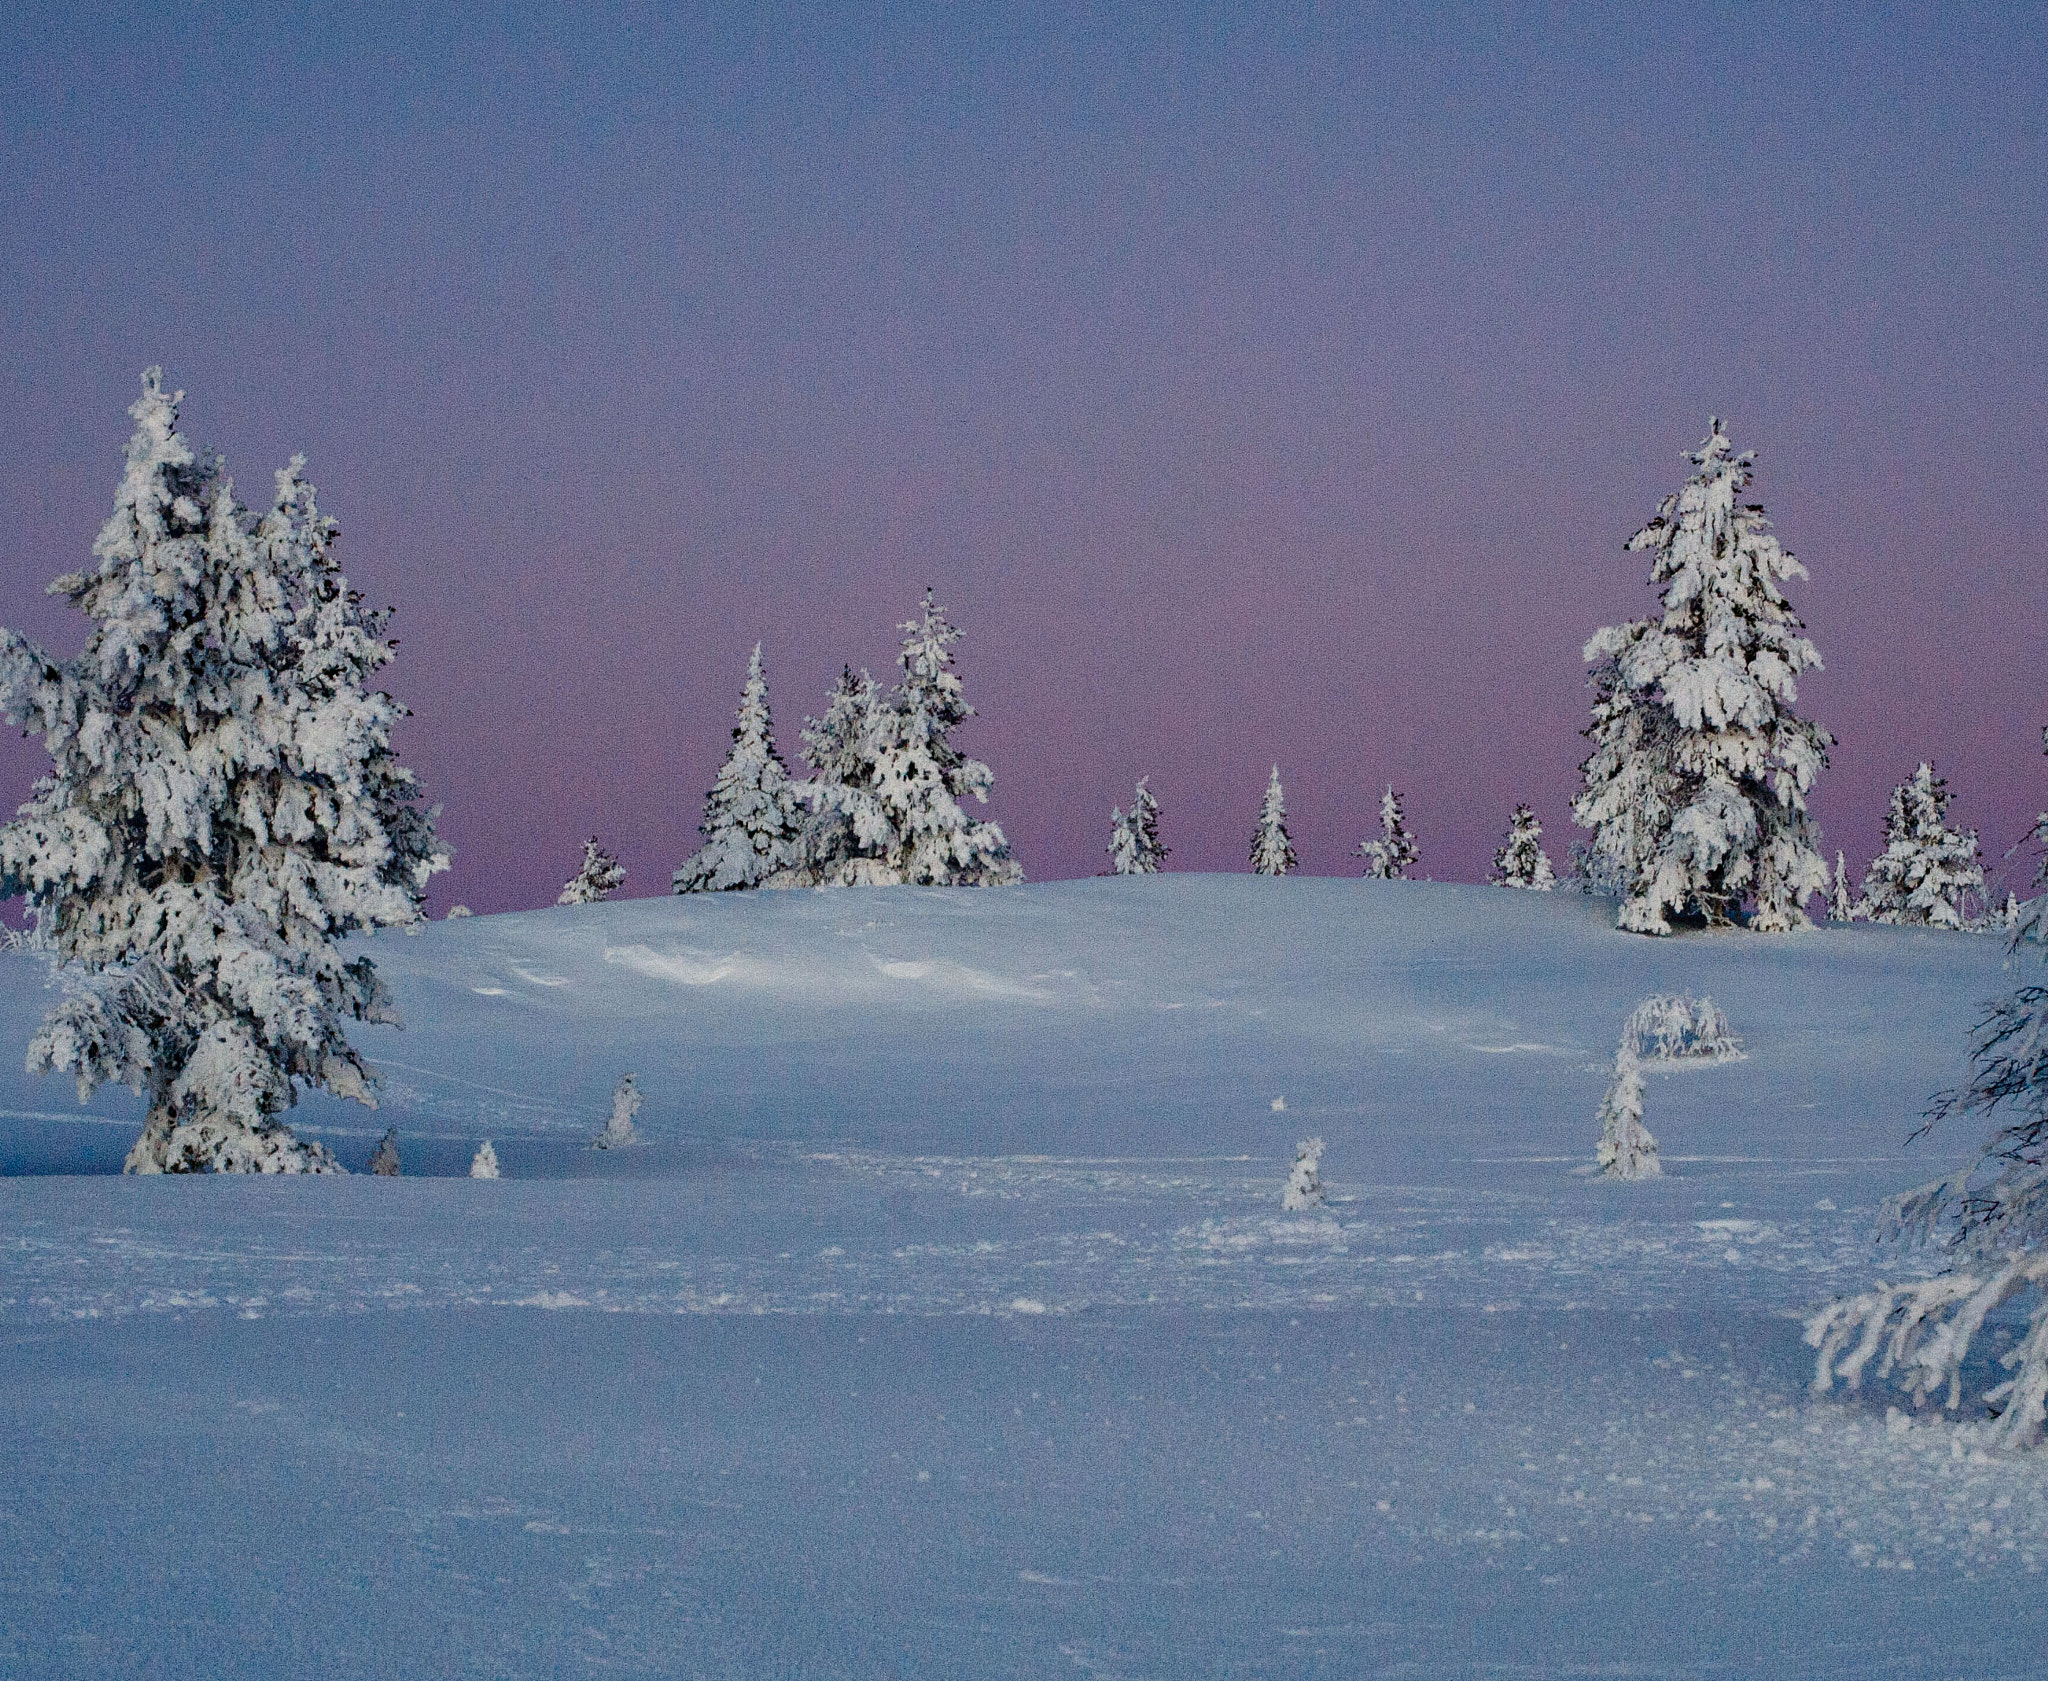 Nikon D700 + AF Nikkor 50mm f/1.4 sample photo. Lapland's pink hour photography